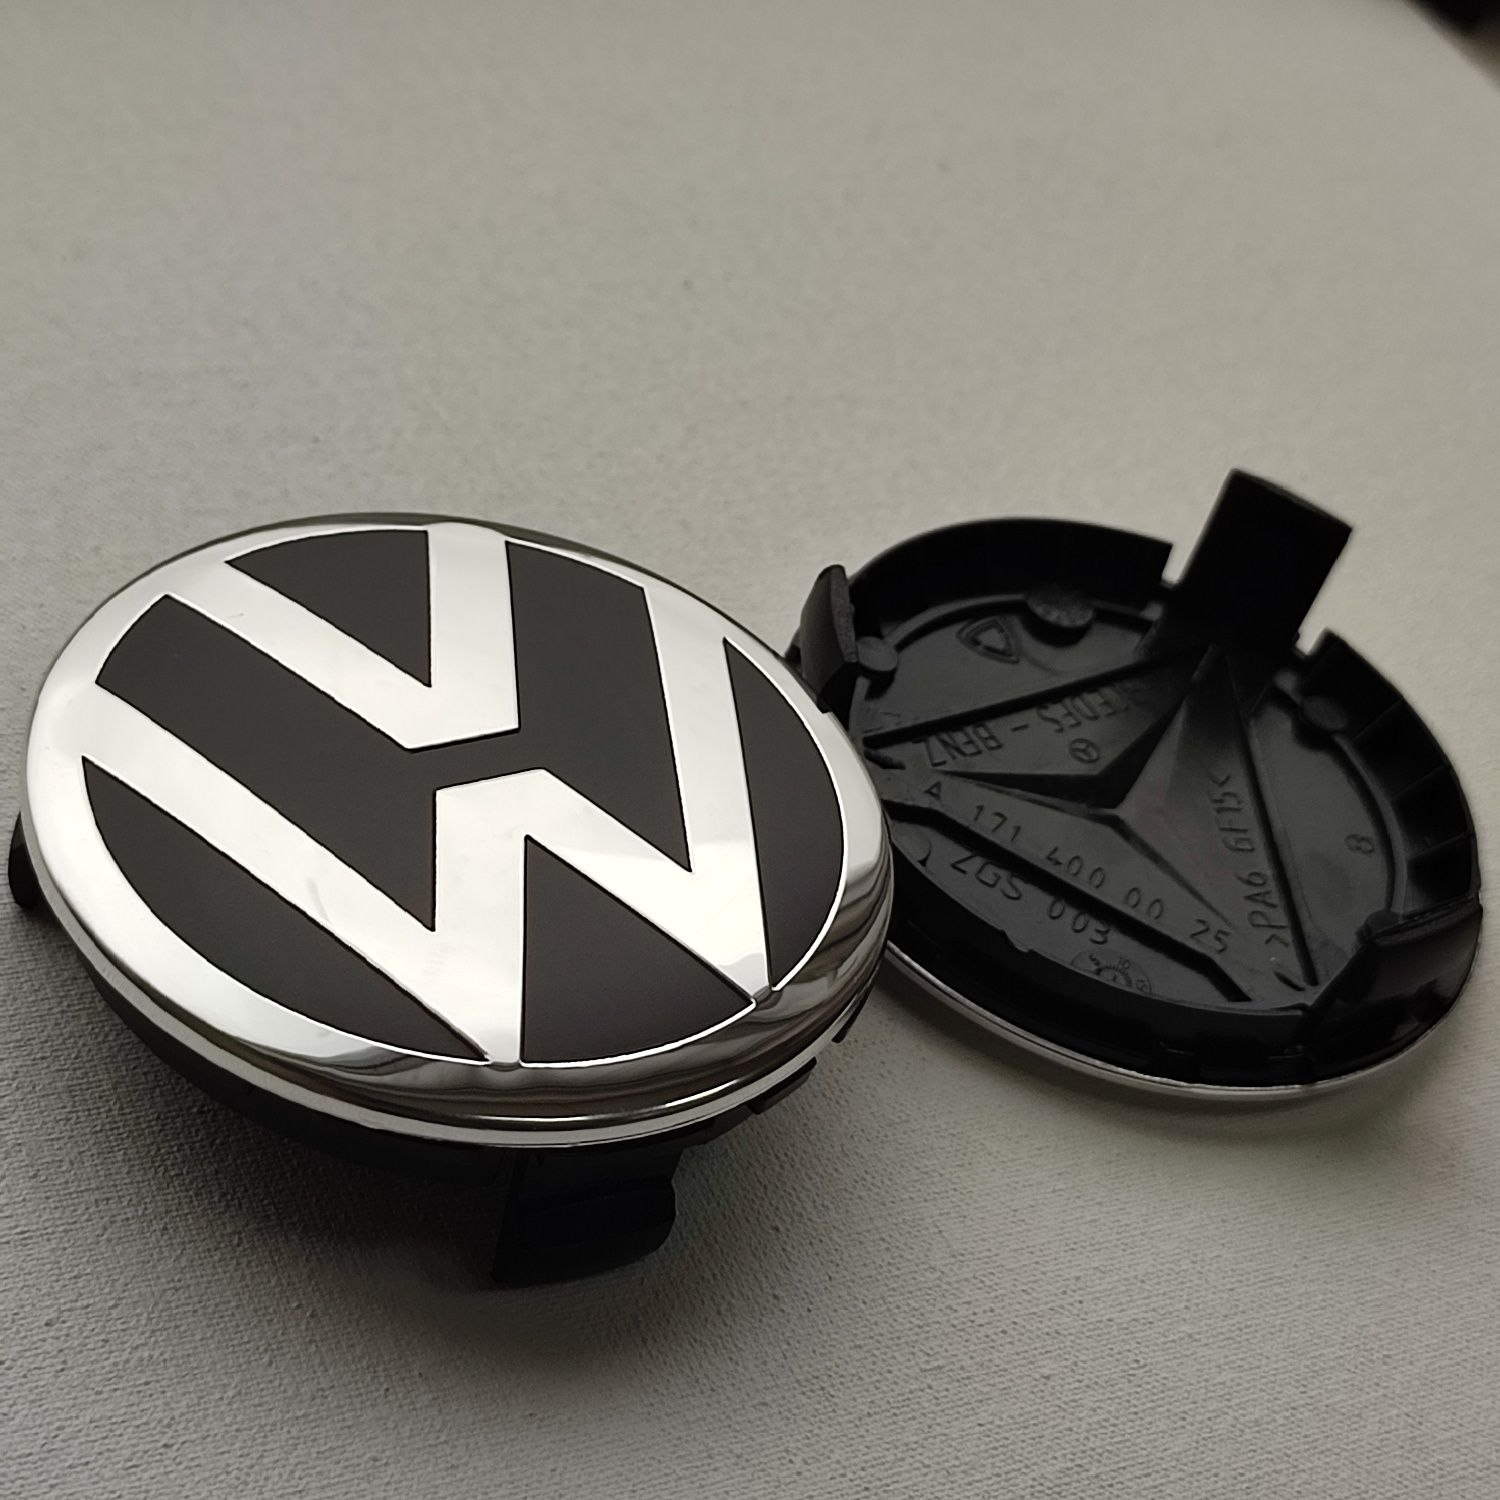 Колпачки заглушки VW 75мм для дисков Мерседес